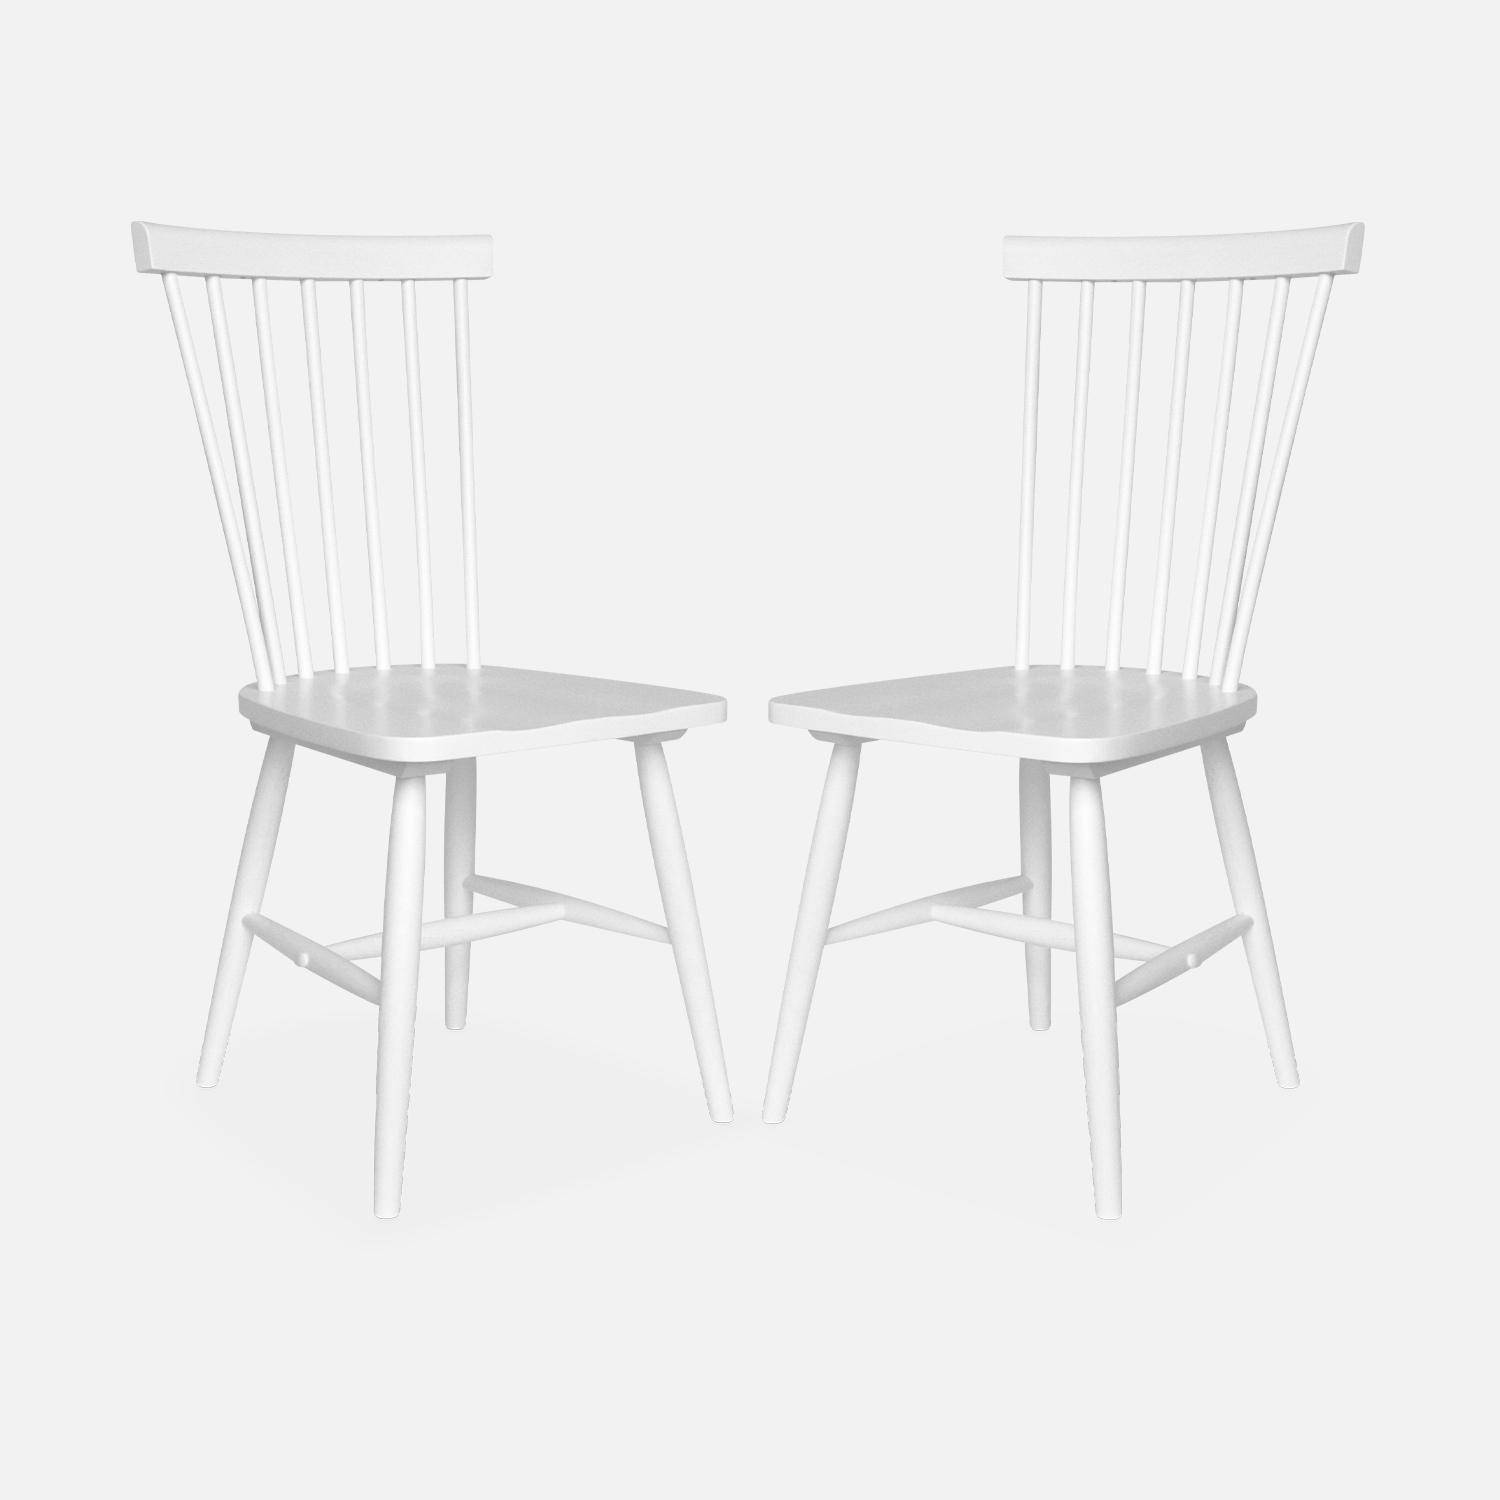 Lot de 2 chaises blanches à barreaux en bois d'hévéa, ROMIE, L 50,8 x P 44,2 x H 90cm. Livraison offerte, garantie 2 ans, meilleur prix garanti ! ,sweeek,Photo4